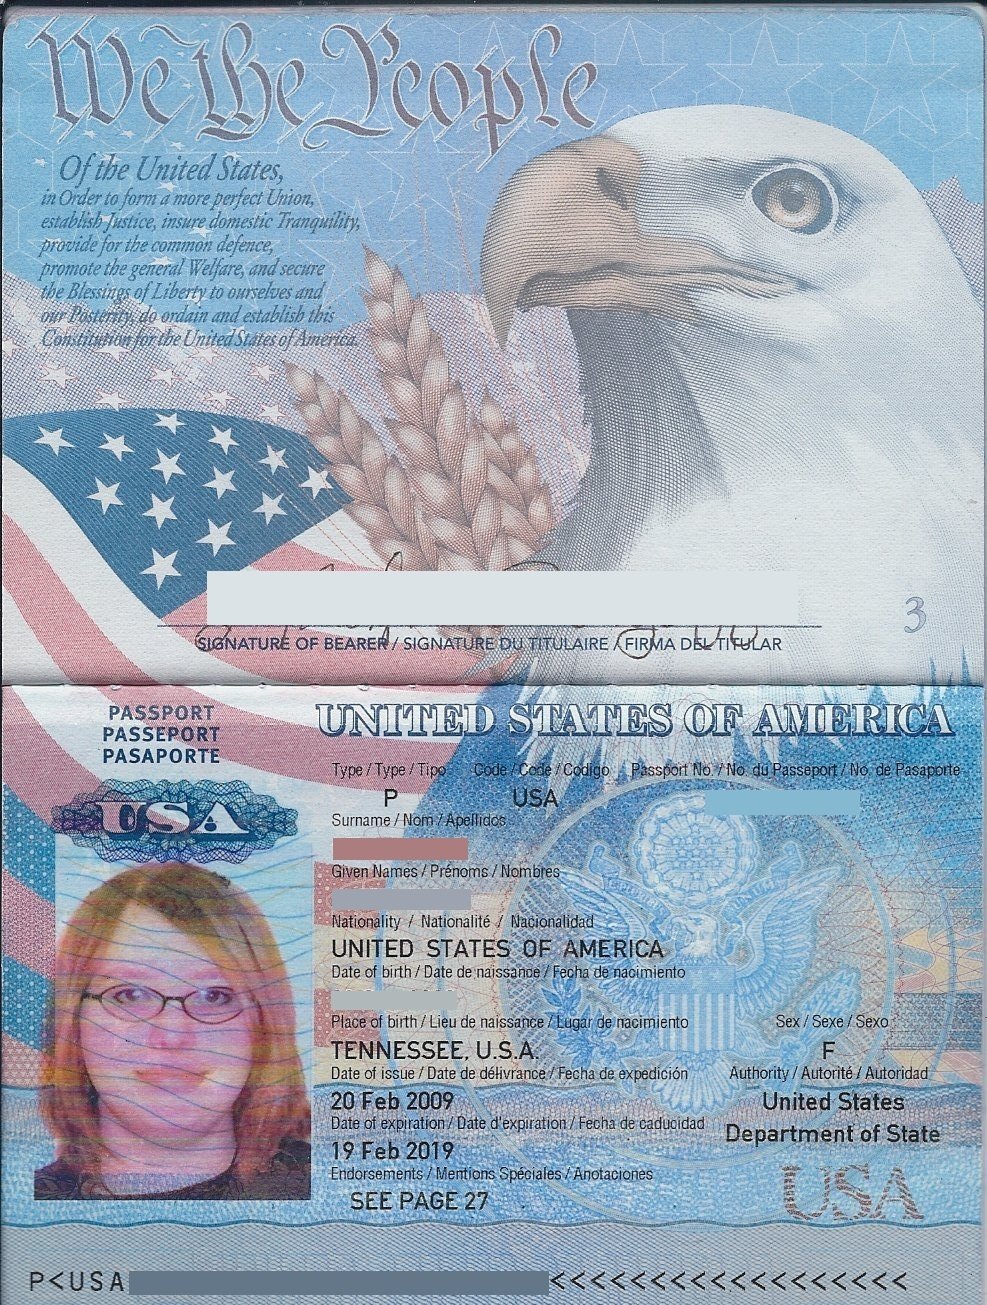 Фото Паспорта В Развернутом Виде